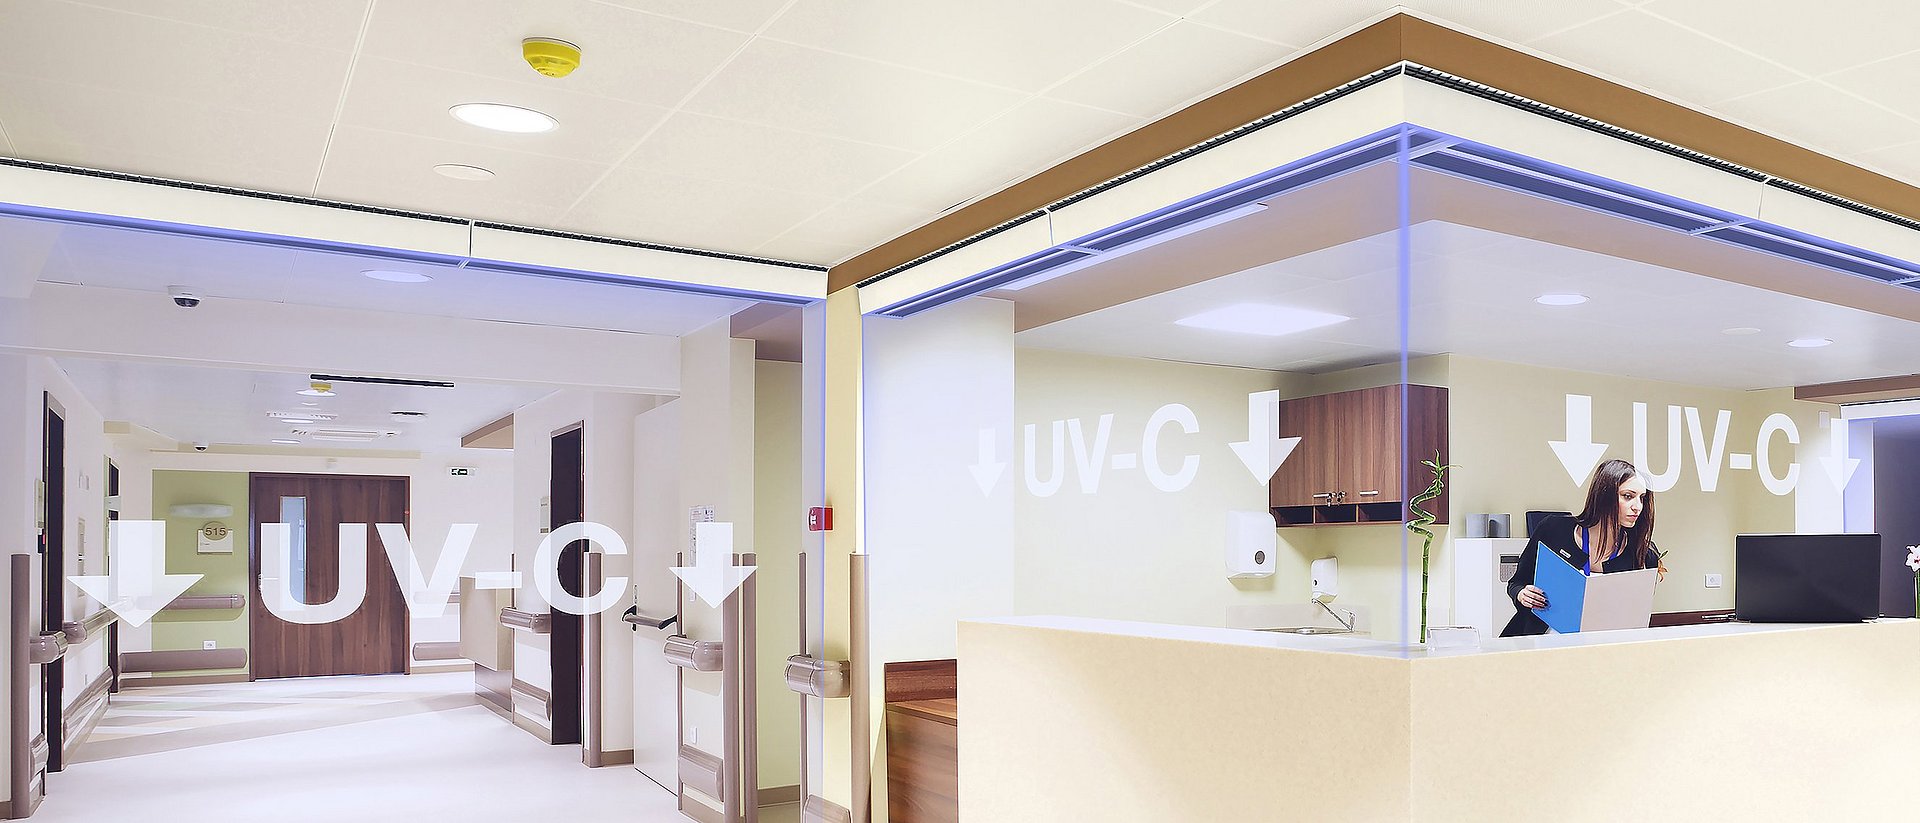 UV-C-Licht befreit Aerosole von Krankheitserregern wie den SARS-CoV-2-Viren. Es entsteht so eine unsichtbare Virenschutzwand, die dahinter befindliche Personen schützt ohne die Bewegungsfreiheit der Menschen einzuschränken. Eine automatische Abschaltvorrichtung schützt hindurchgehende Personen vor der UV-Strahlung.